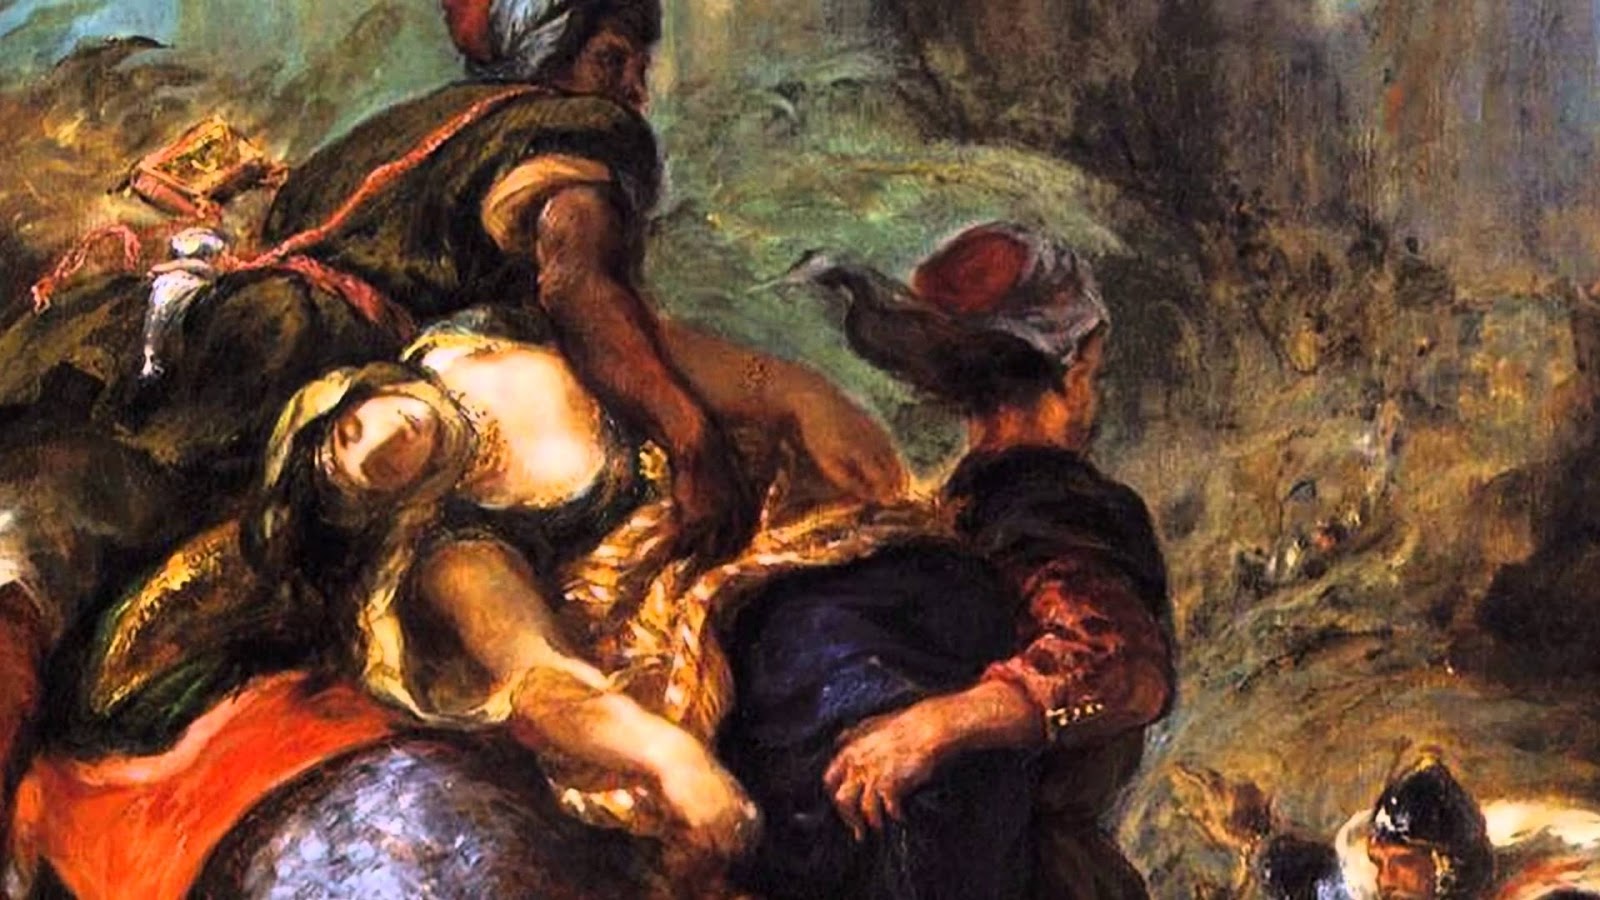 Eugene+Delacroix-1798-1863 (232).jpg